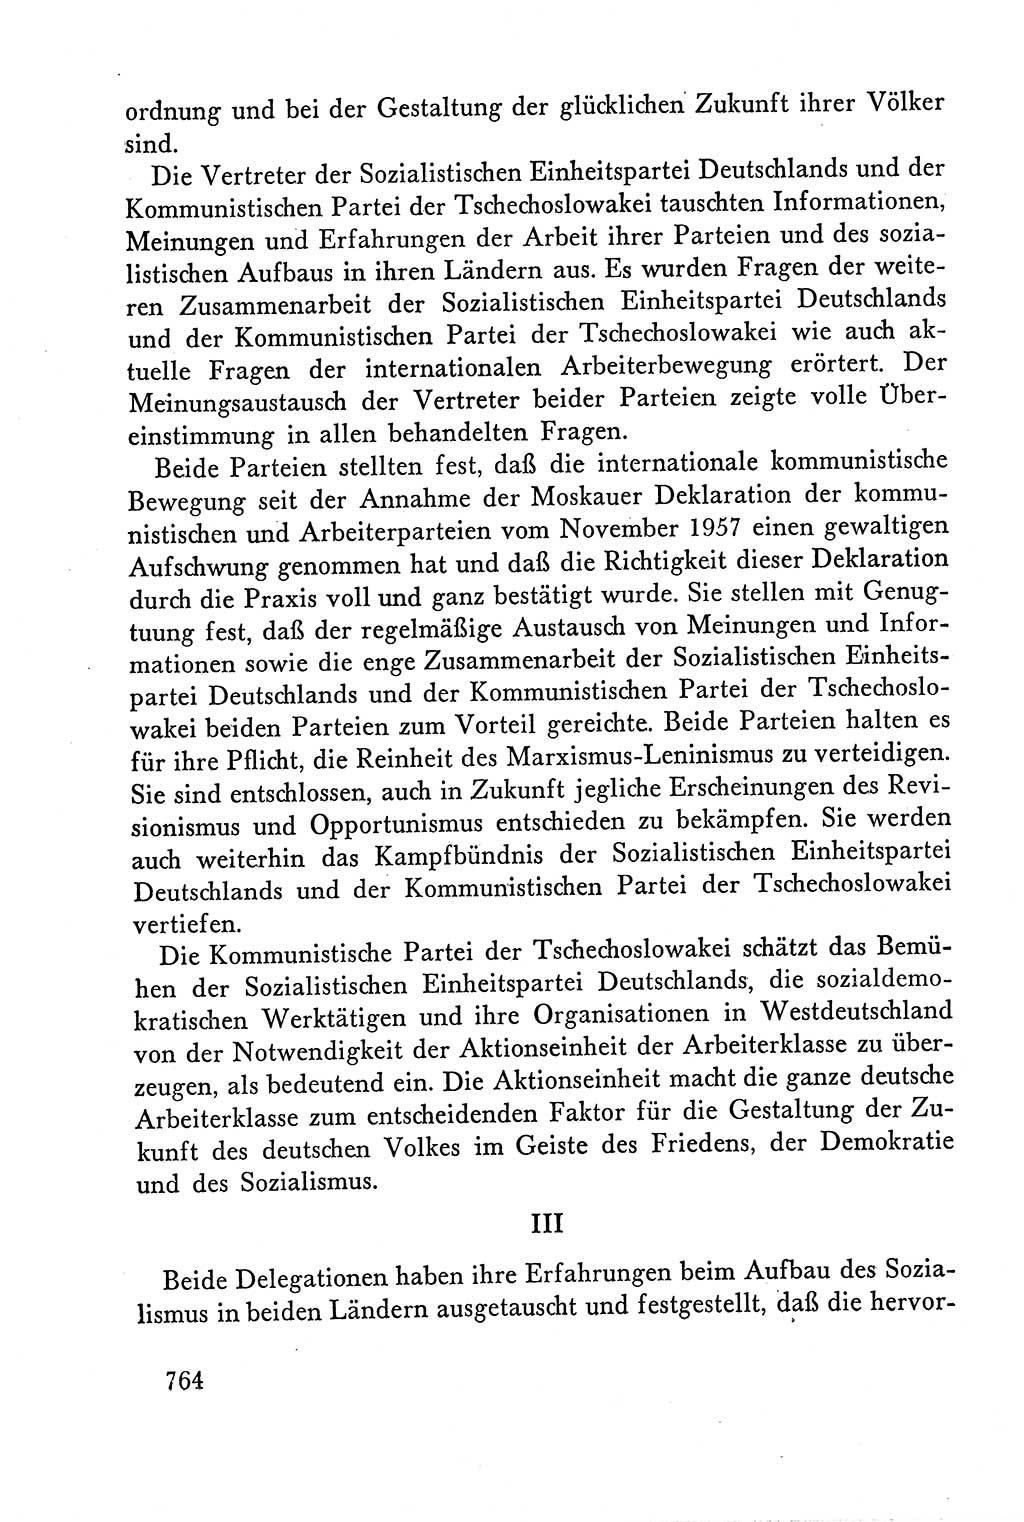 Dokumente der Sozialistischen Einheitspartei Deutschlands (SED) [Deutsche Demokratische Republik (DDR)] 1958-1959, Seite 764 (Dok. SED DDR 1958-1959, S. 764)